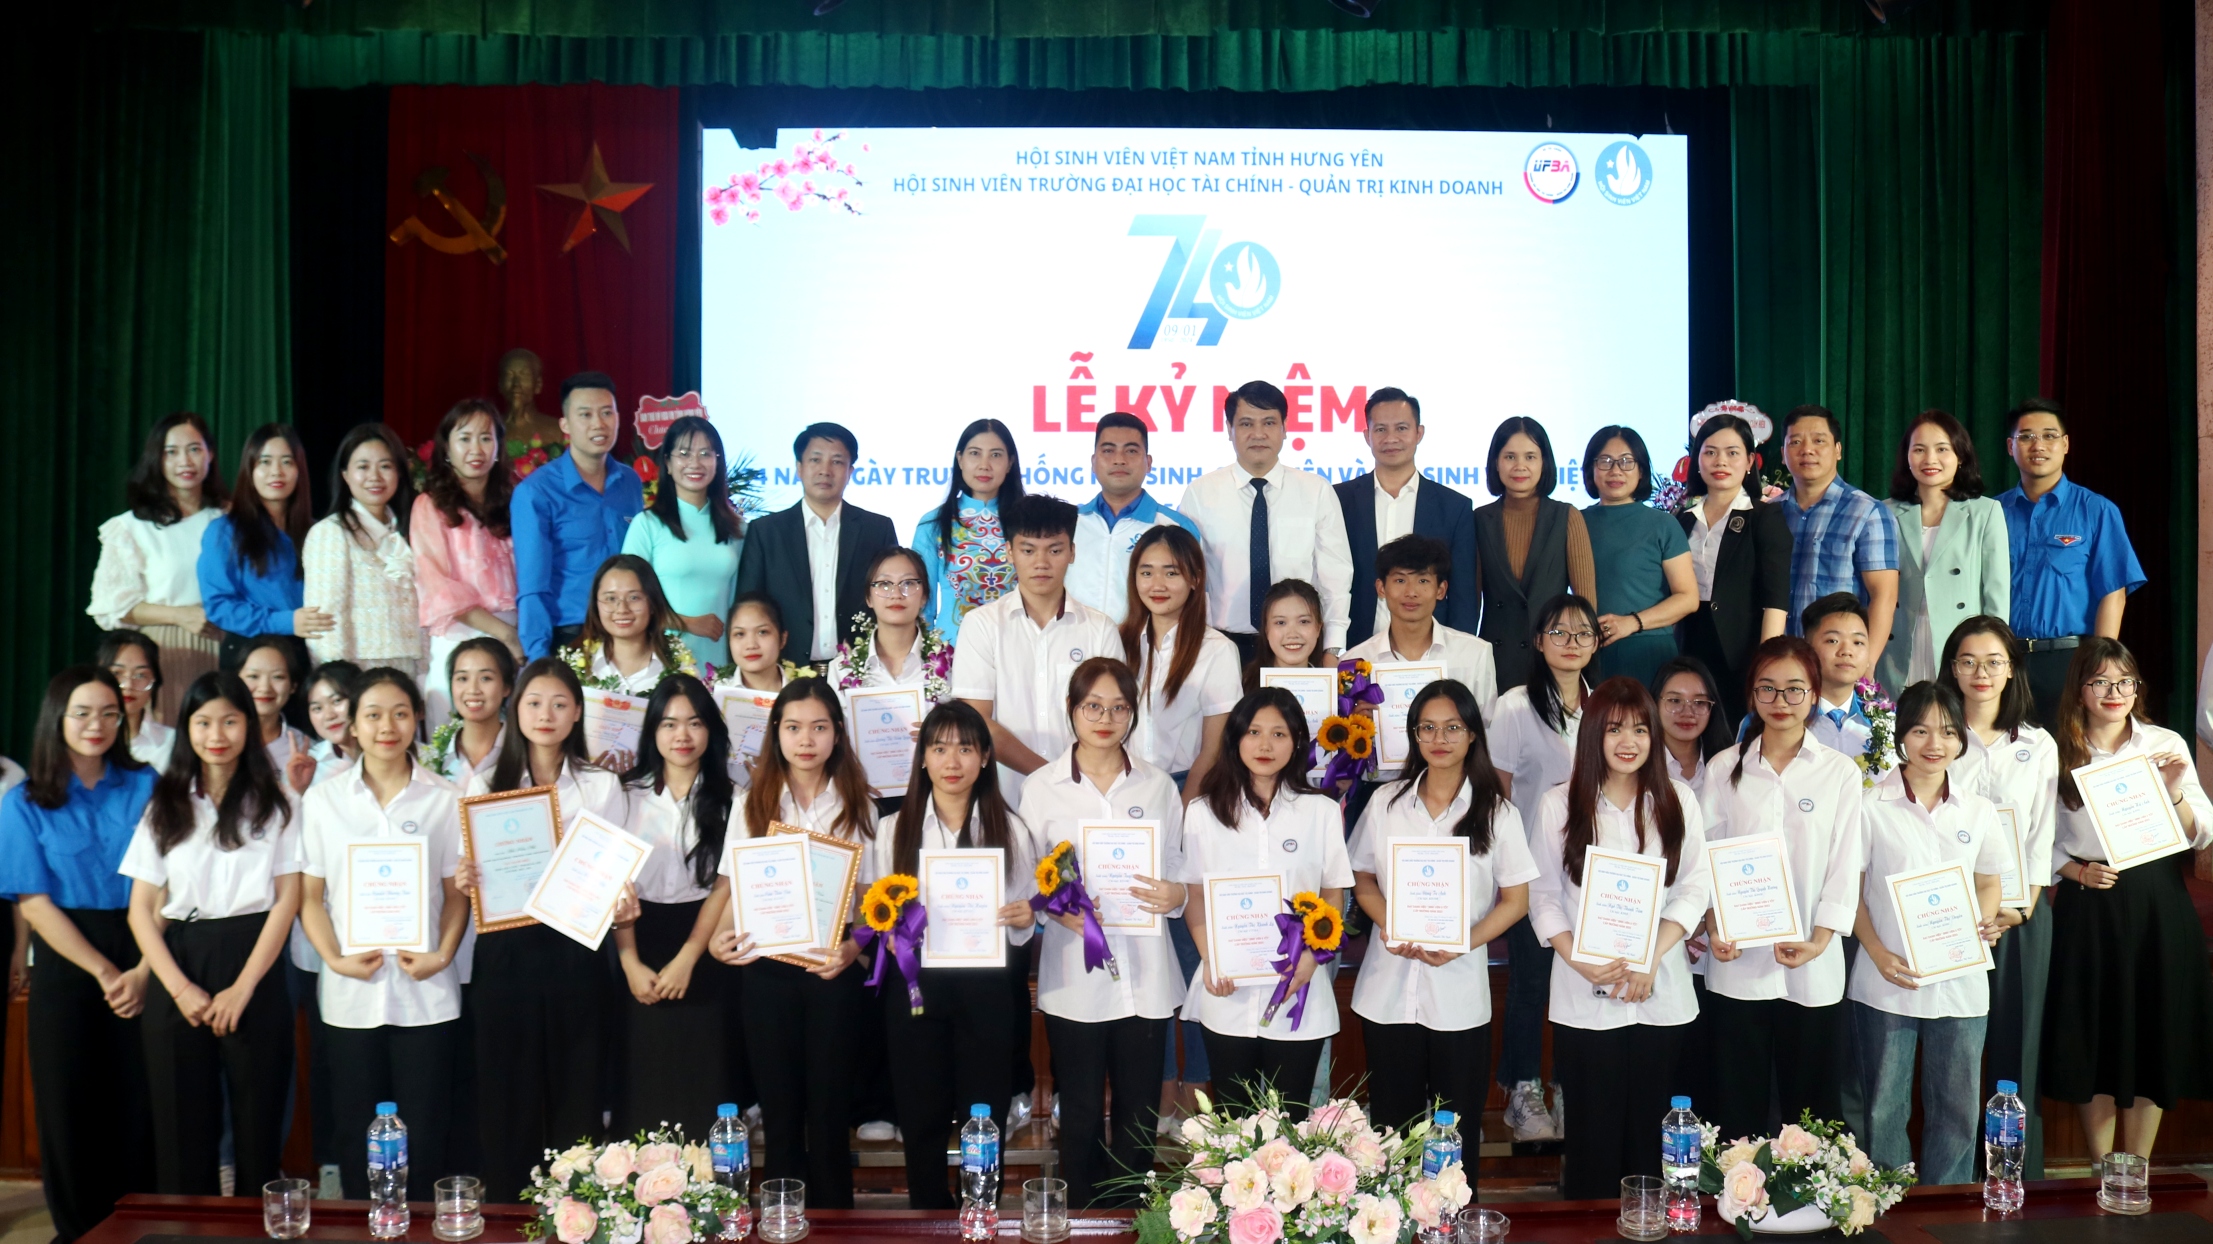 Lễ kỉ niệm 74 năm ngày truyền thống Học sinh - Sinh viên Việt Nam  (09/01/1950 – 09/01/2024)